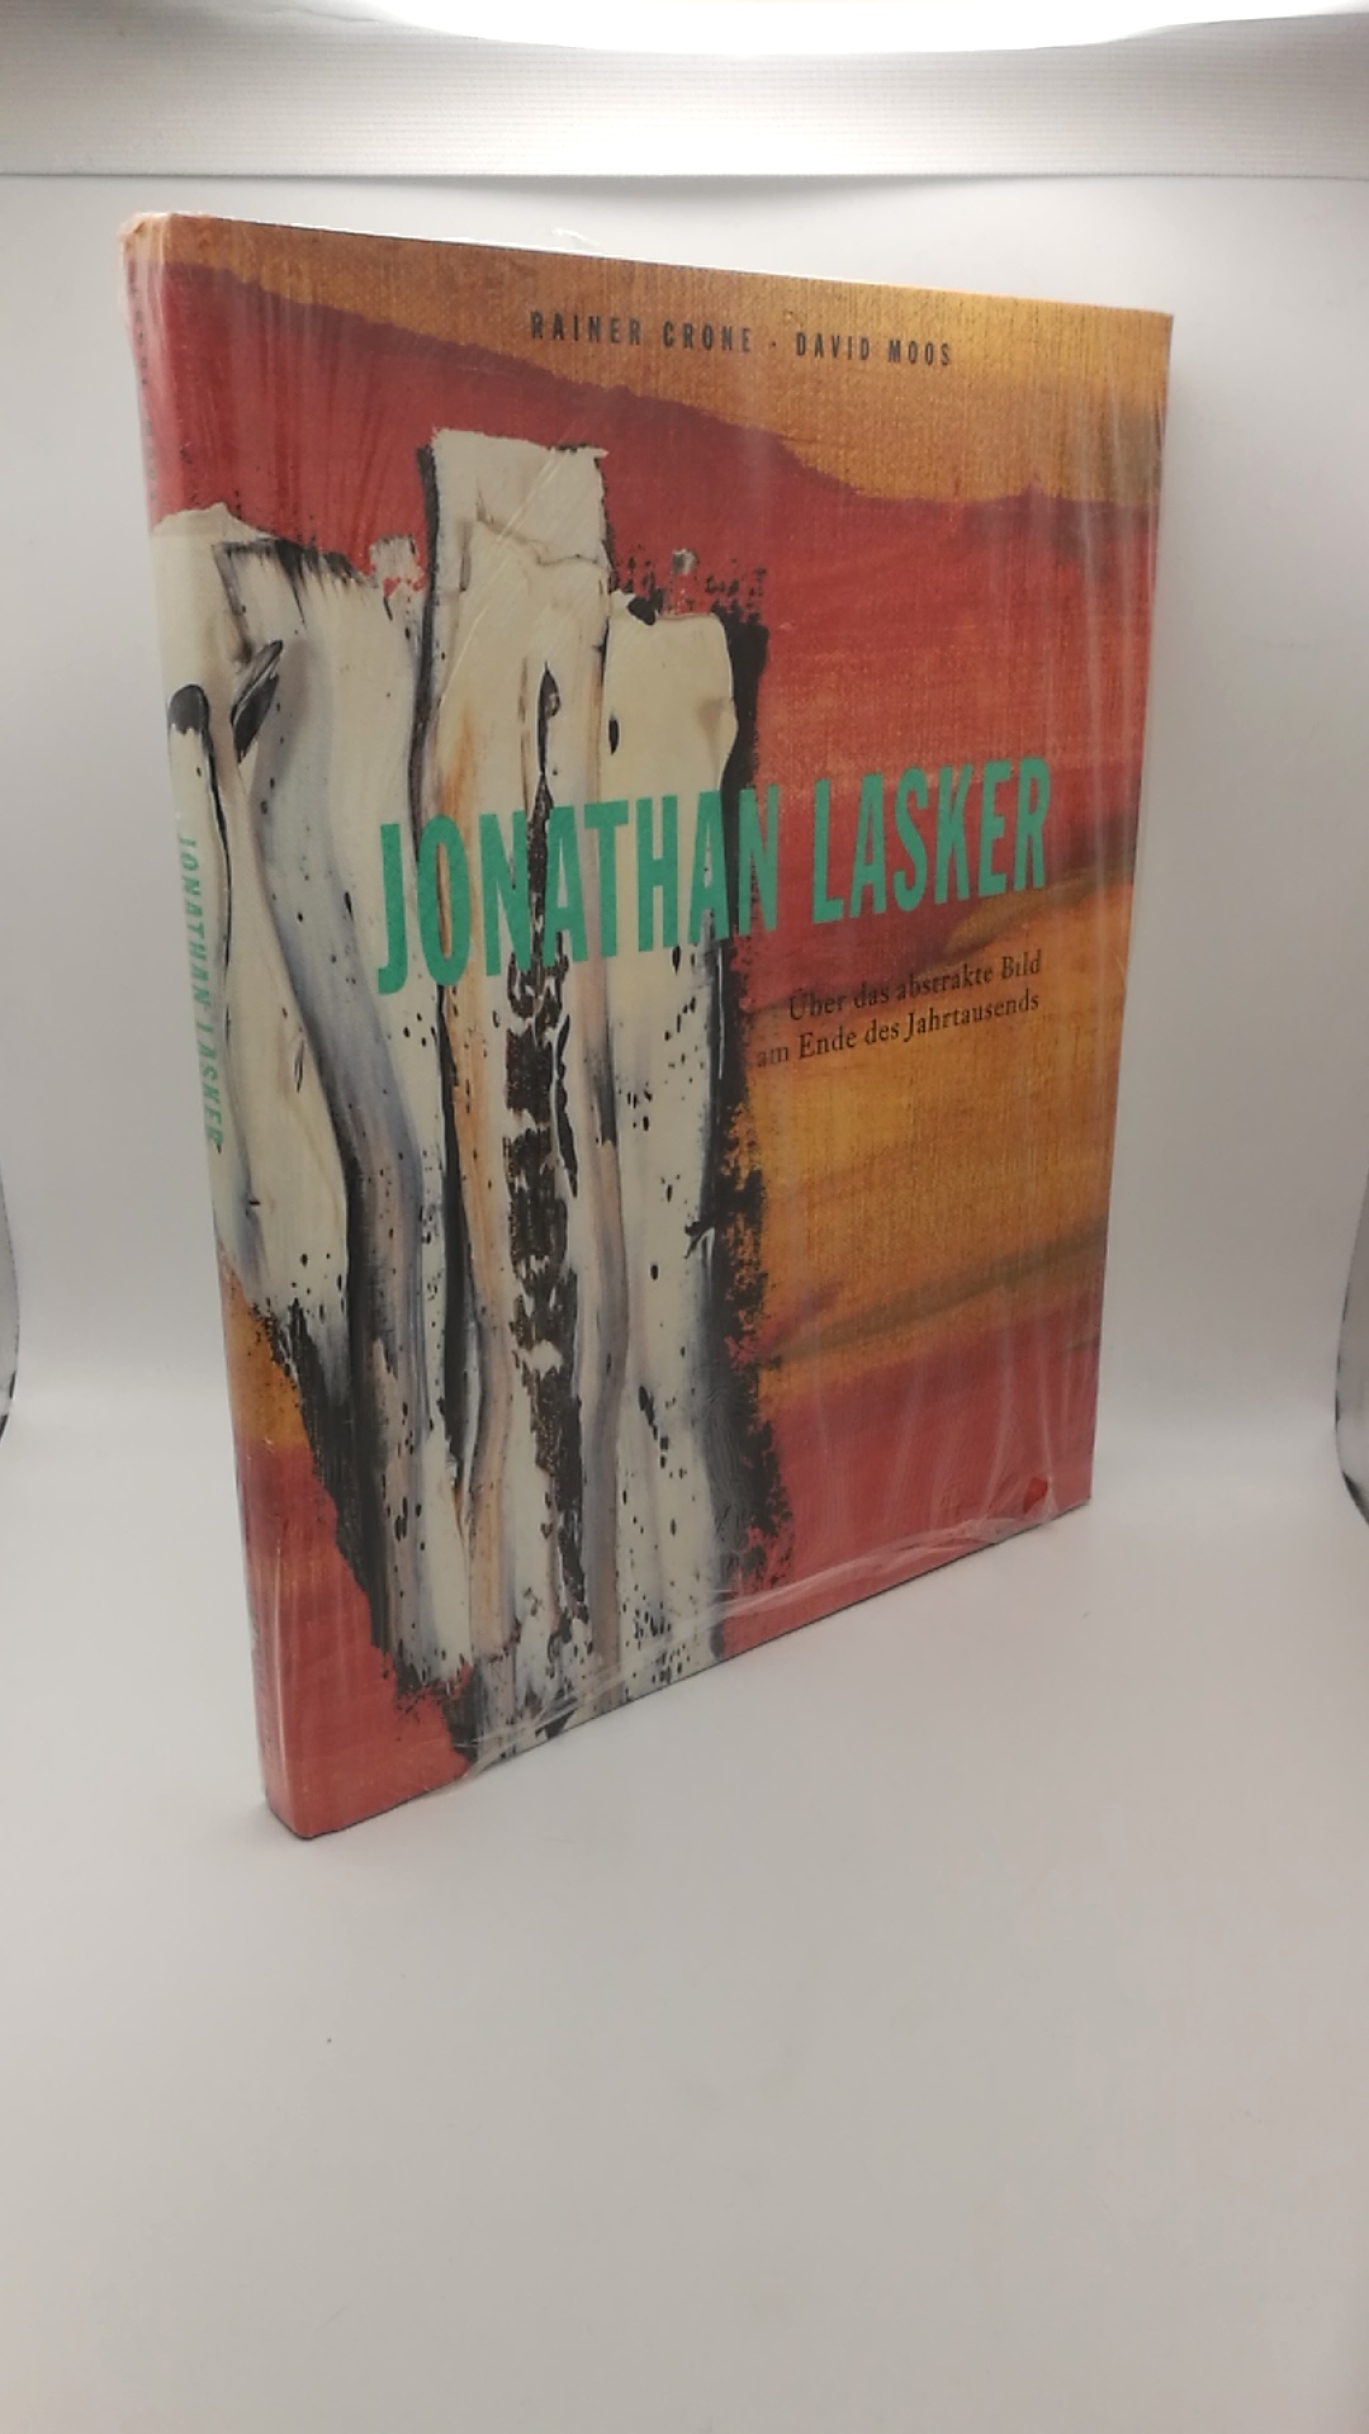 Lasker, Jonathan: Jonathan Lasker Über das abstrakte Bild am Ende des Jahrtausends: verschlungen in die Geschichte der Malerei